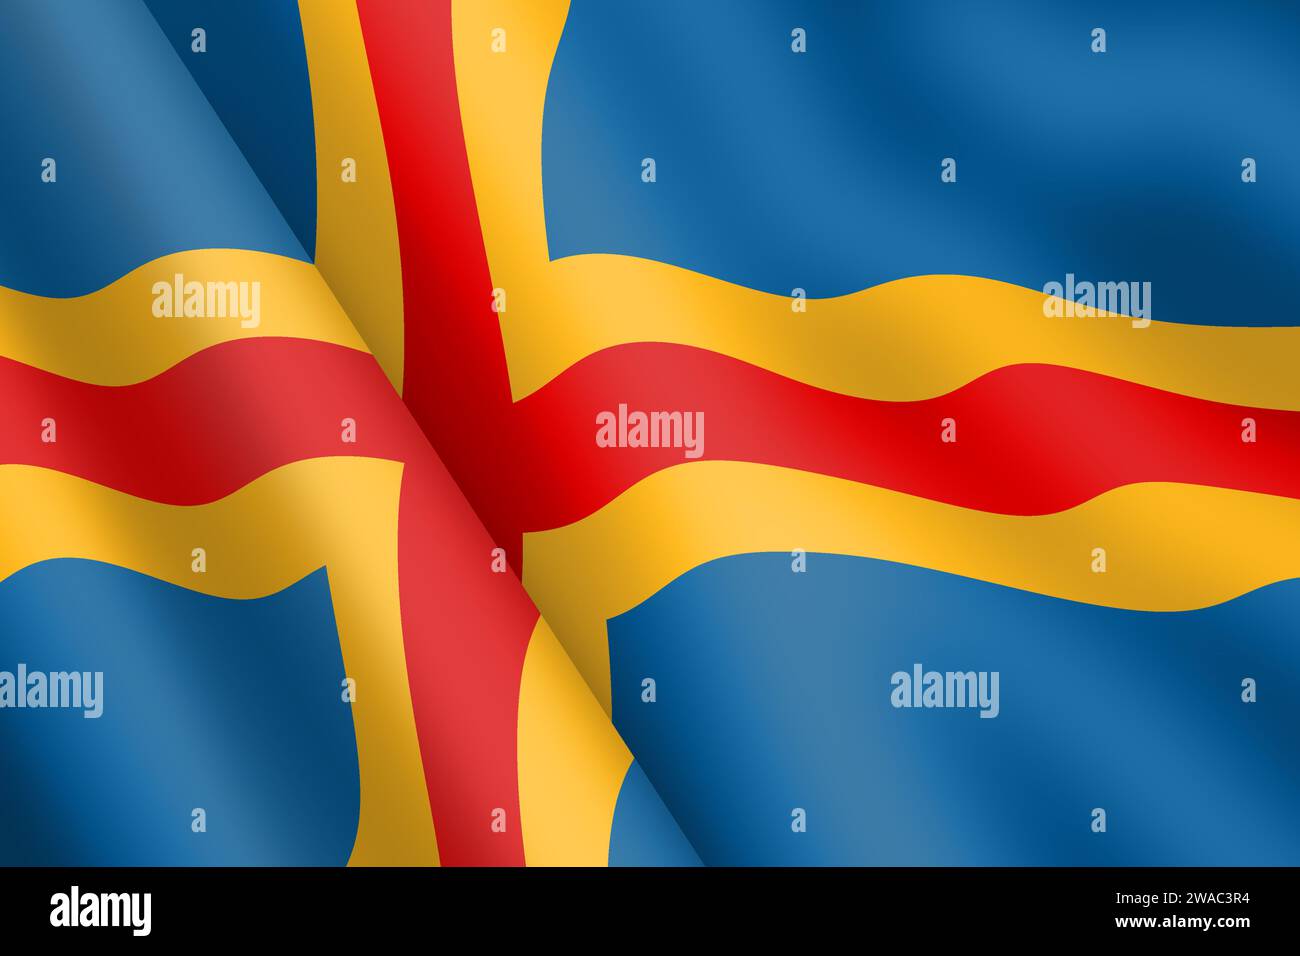 Aland Islands agitant drapeau 3d illustration ondulation du vent Banque D'Images